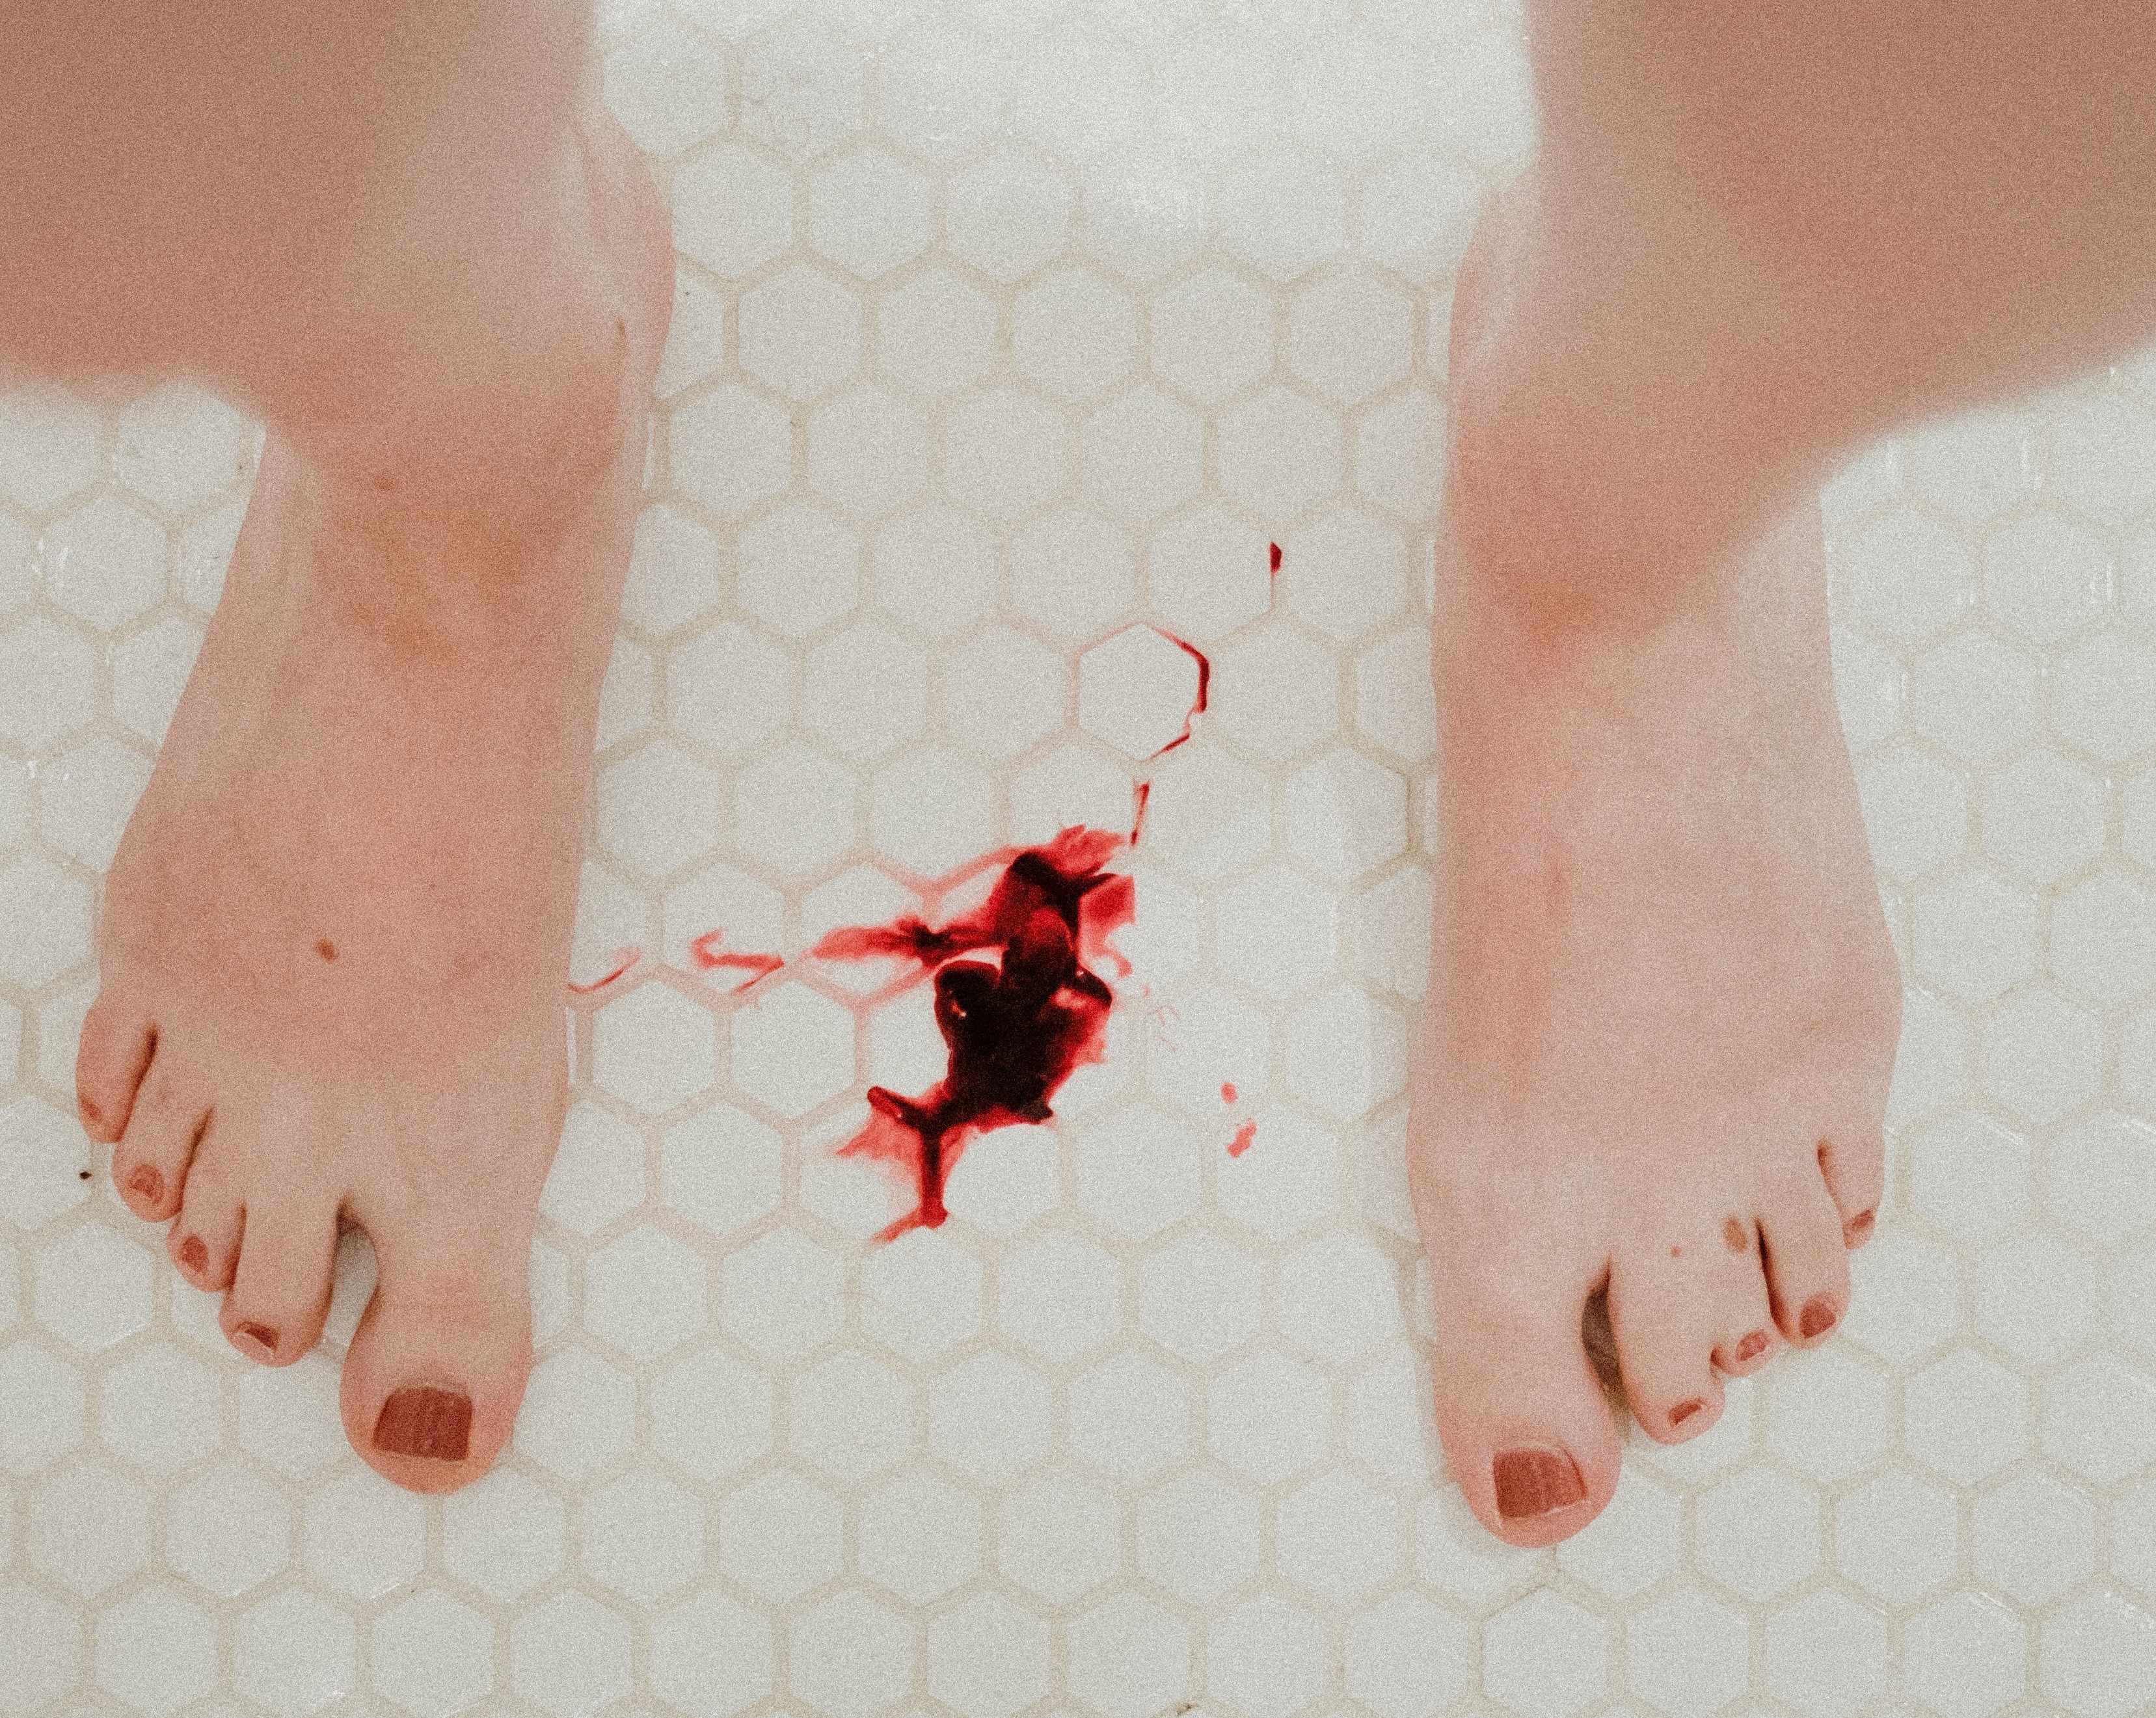 O que é a menorragia, condição que faz sangrar além do normal na menstruação  — e como tratá-la - BBC News Brasil